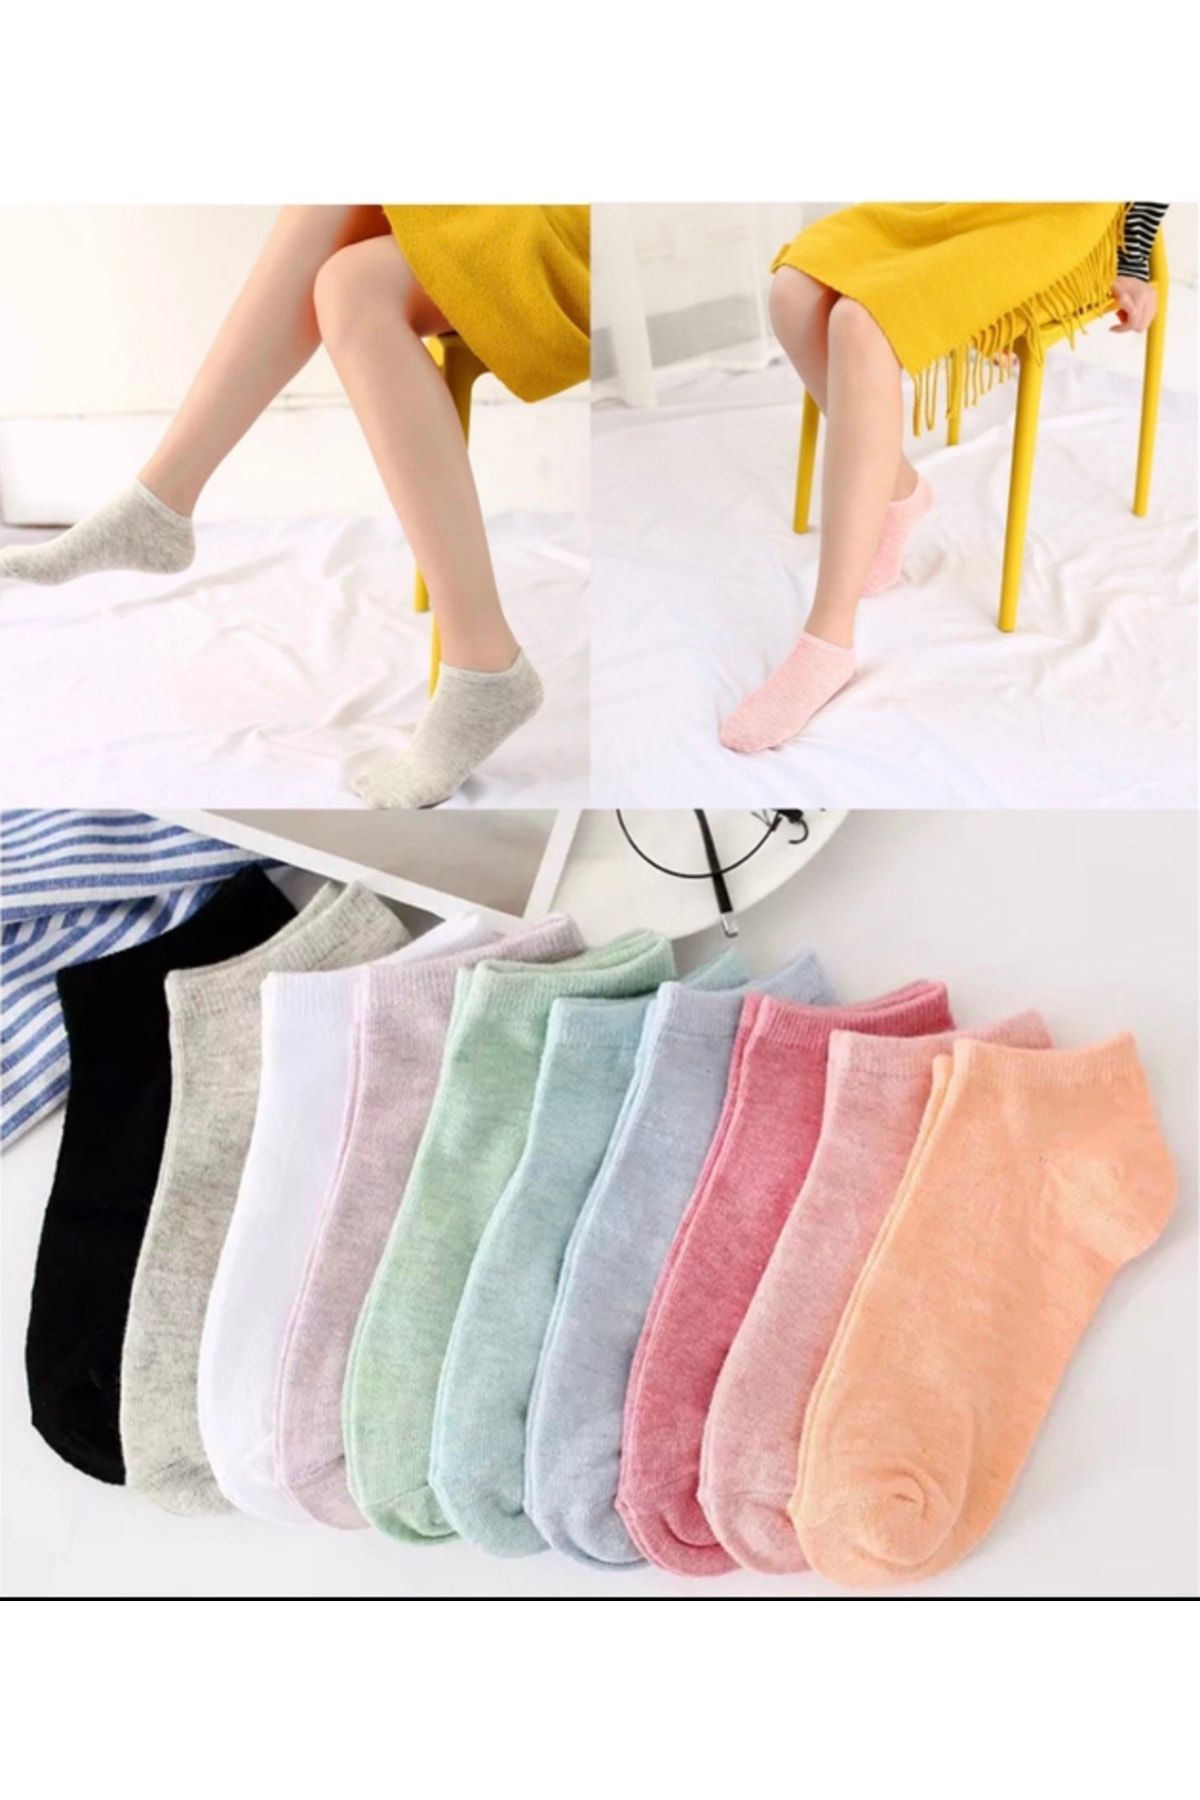 dm del more 10 Çift Kadın Desensiz 10 Renkli Yıkamalı Düz Patik Bilek Çorap